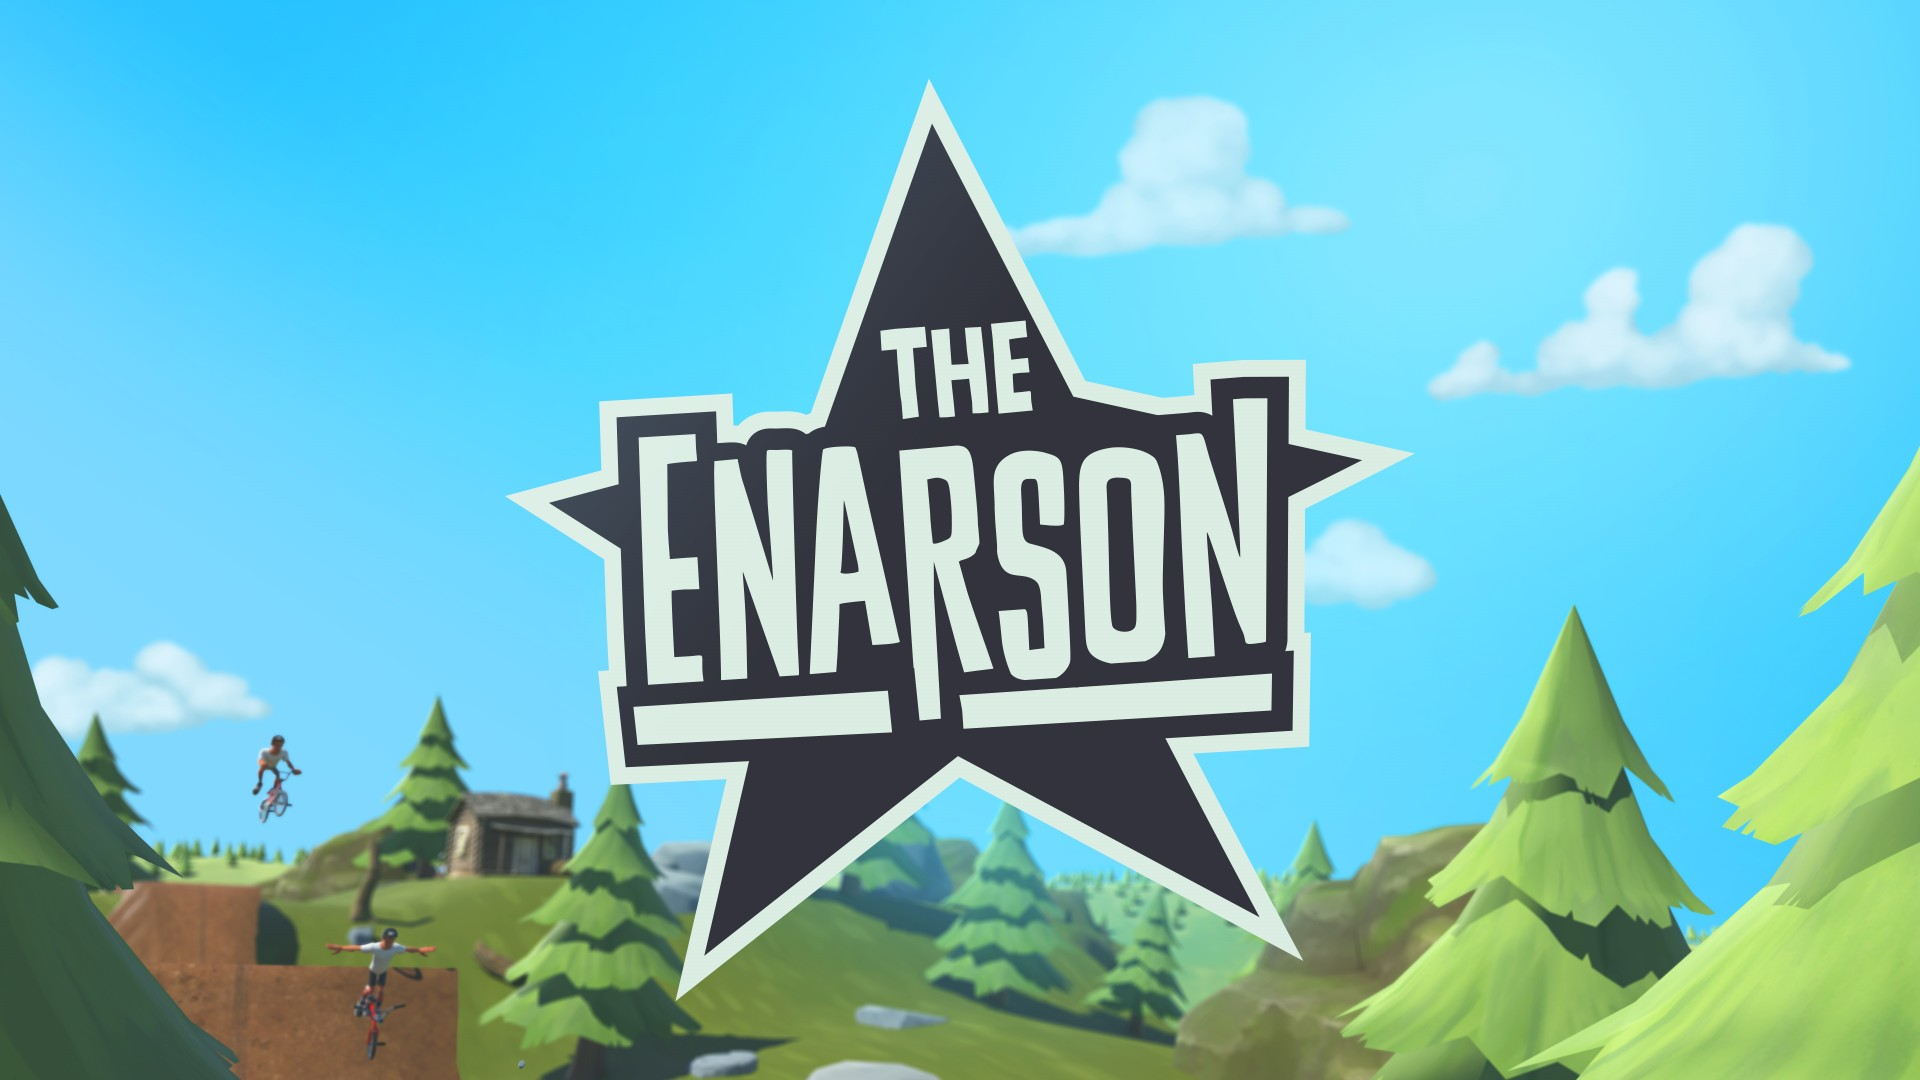 The Enarson